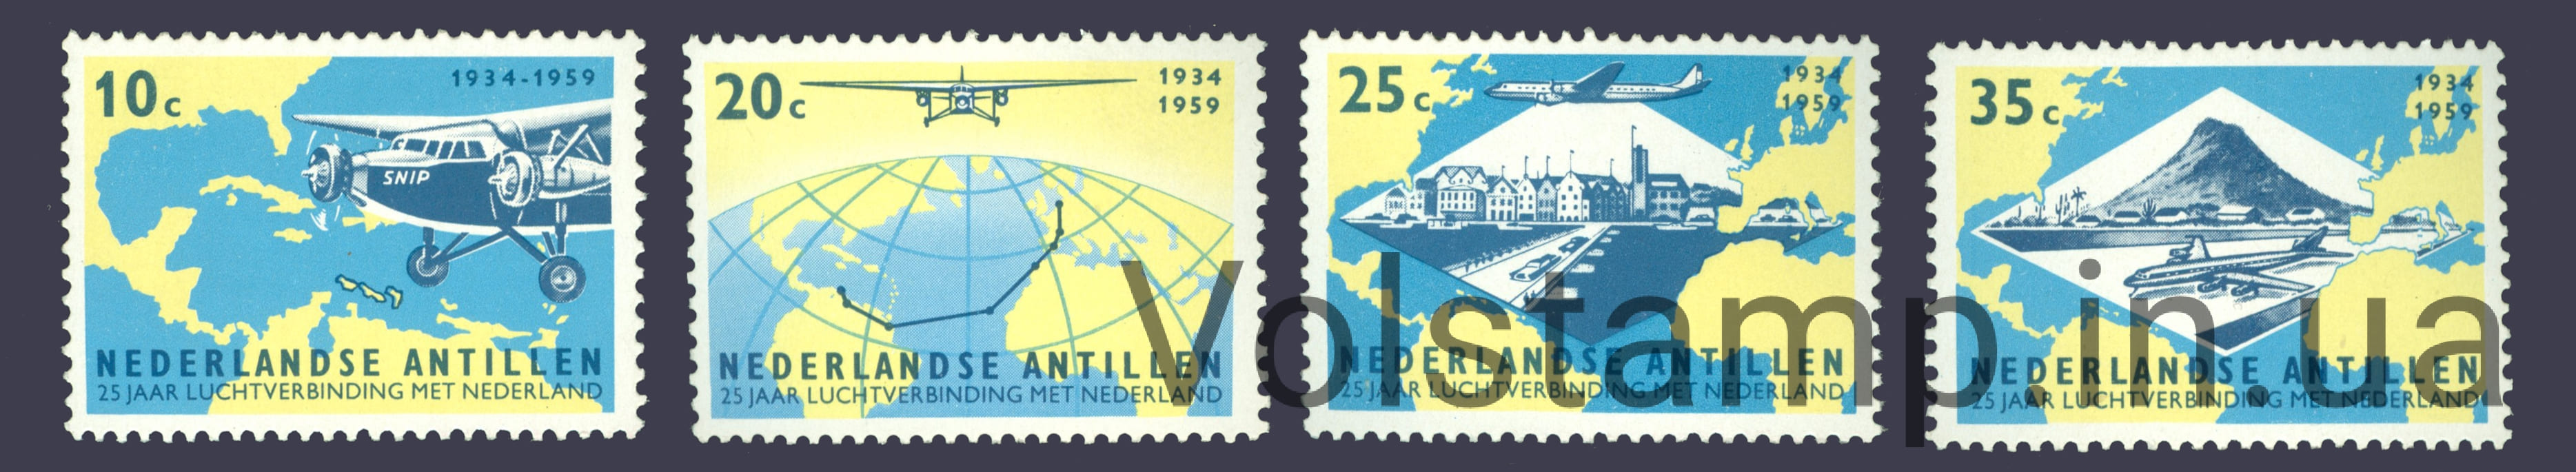 1959 Нидерландские Антильские острова Серия марок (Авиация, самолет, транспорт) MNH №102-105